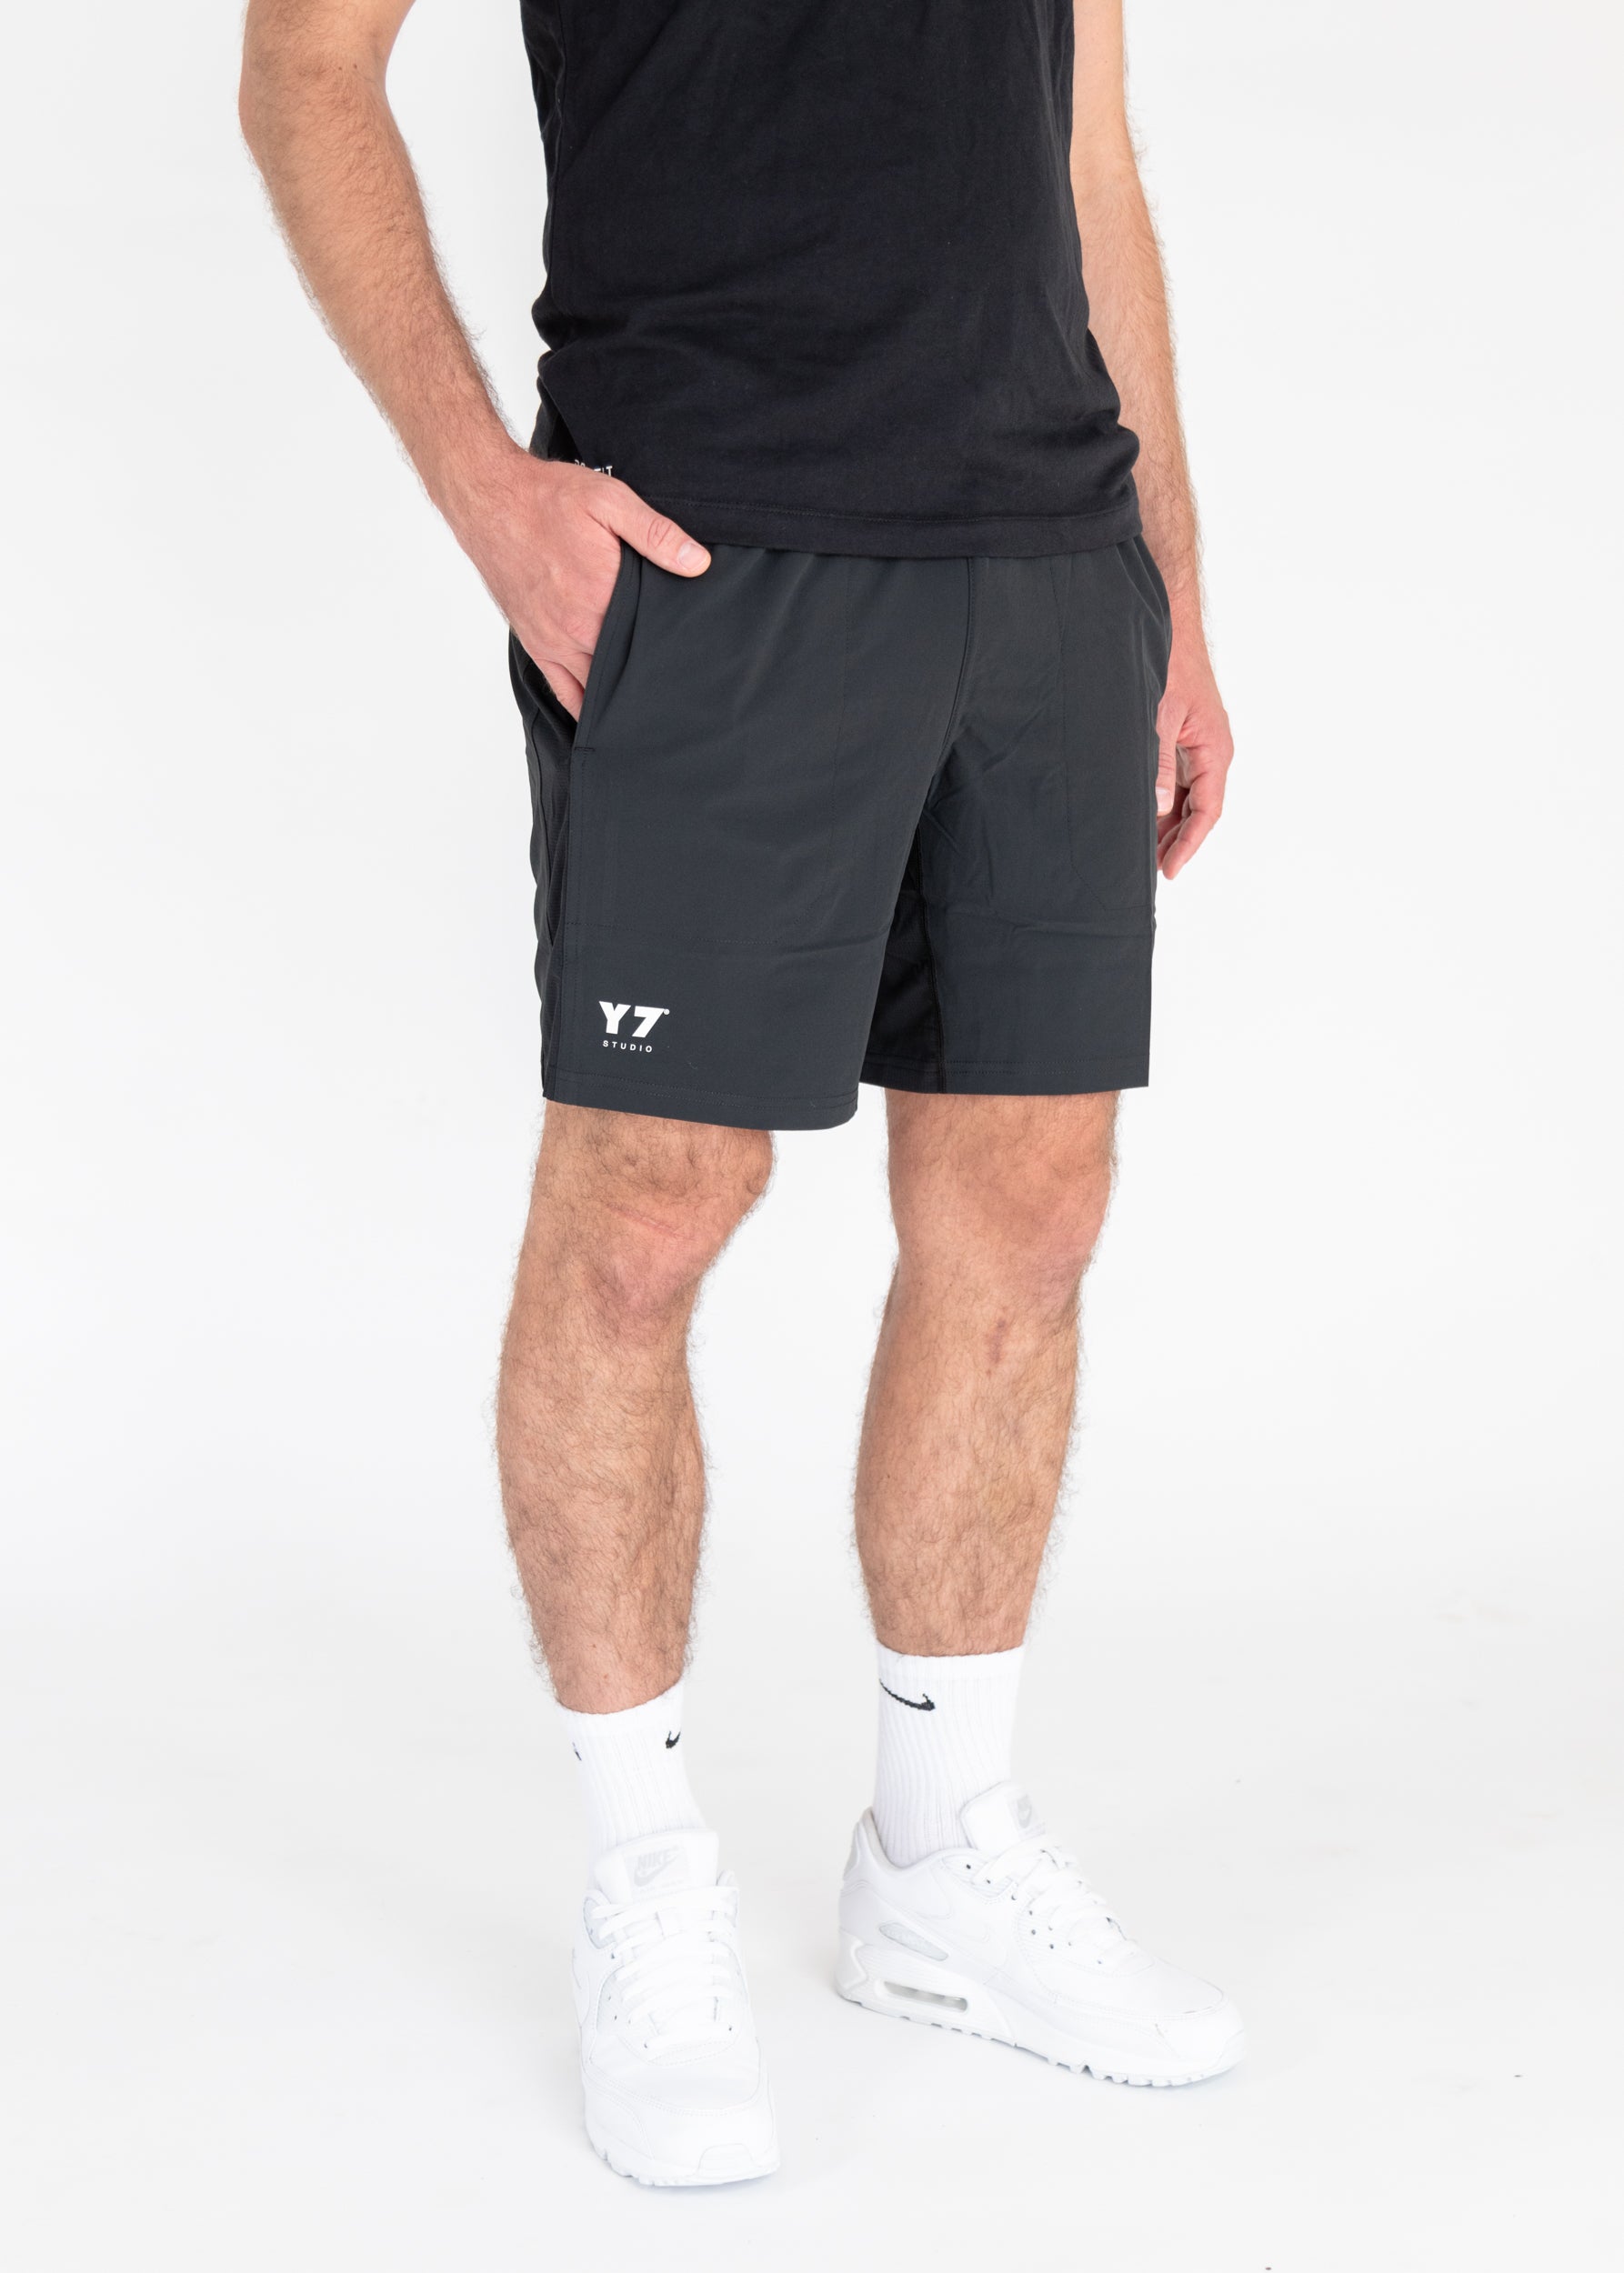 Y7 x Nike Yoga Short